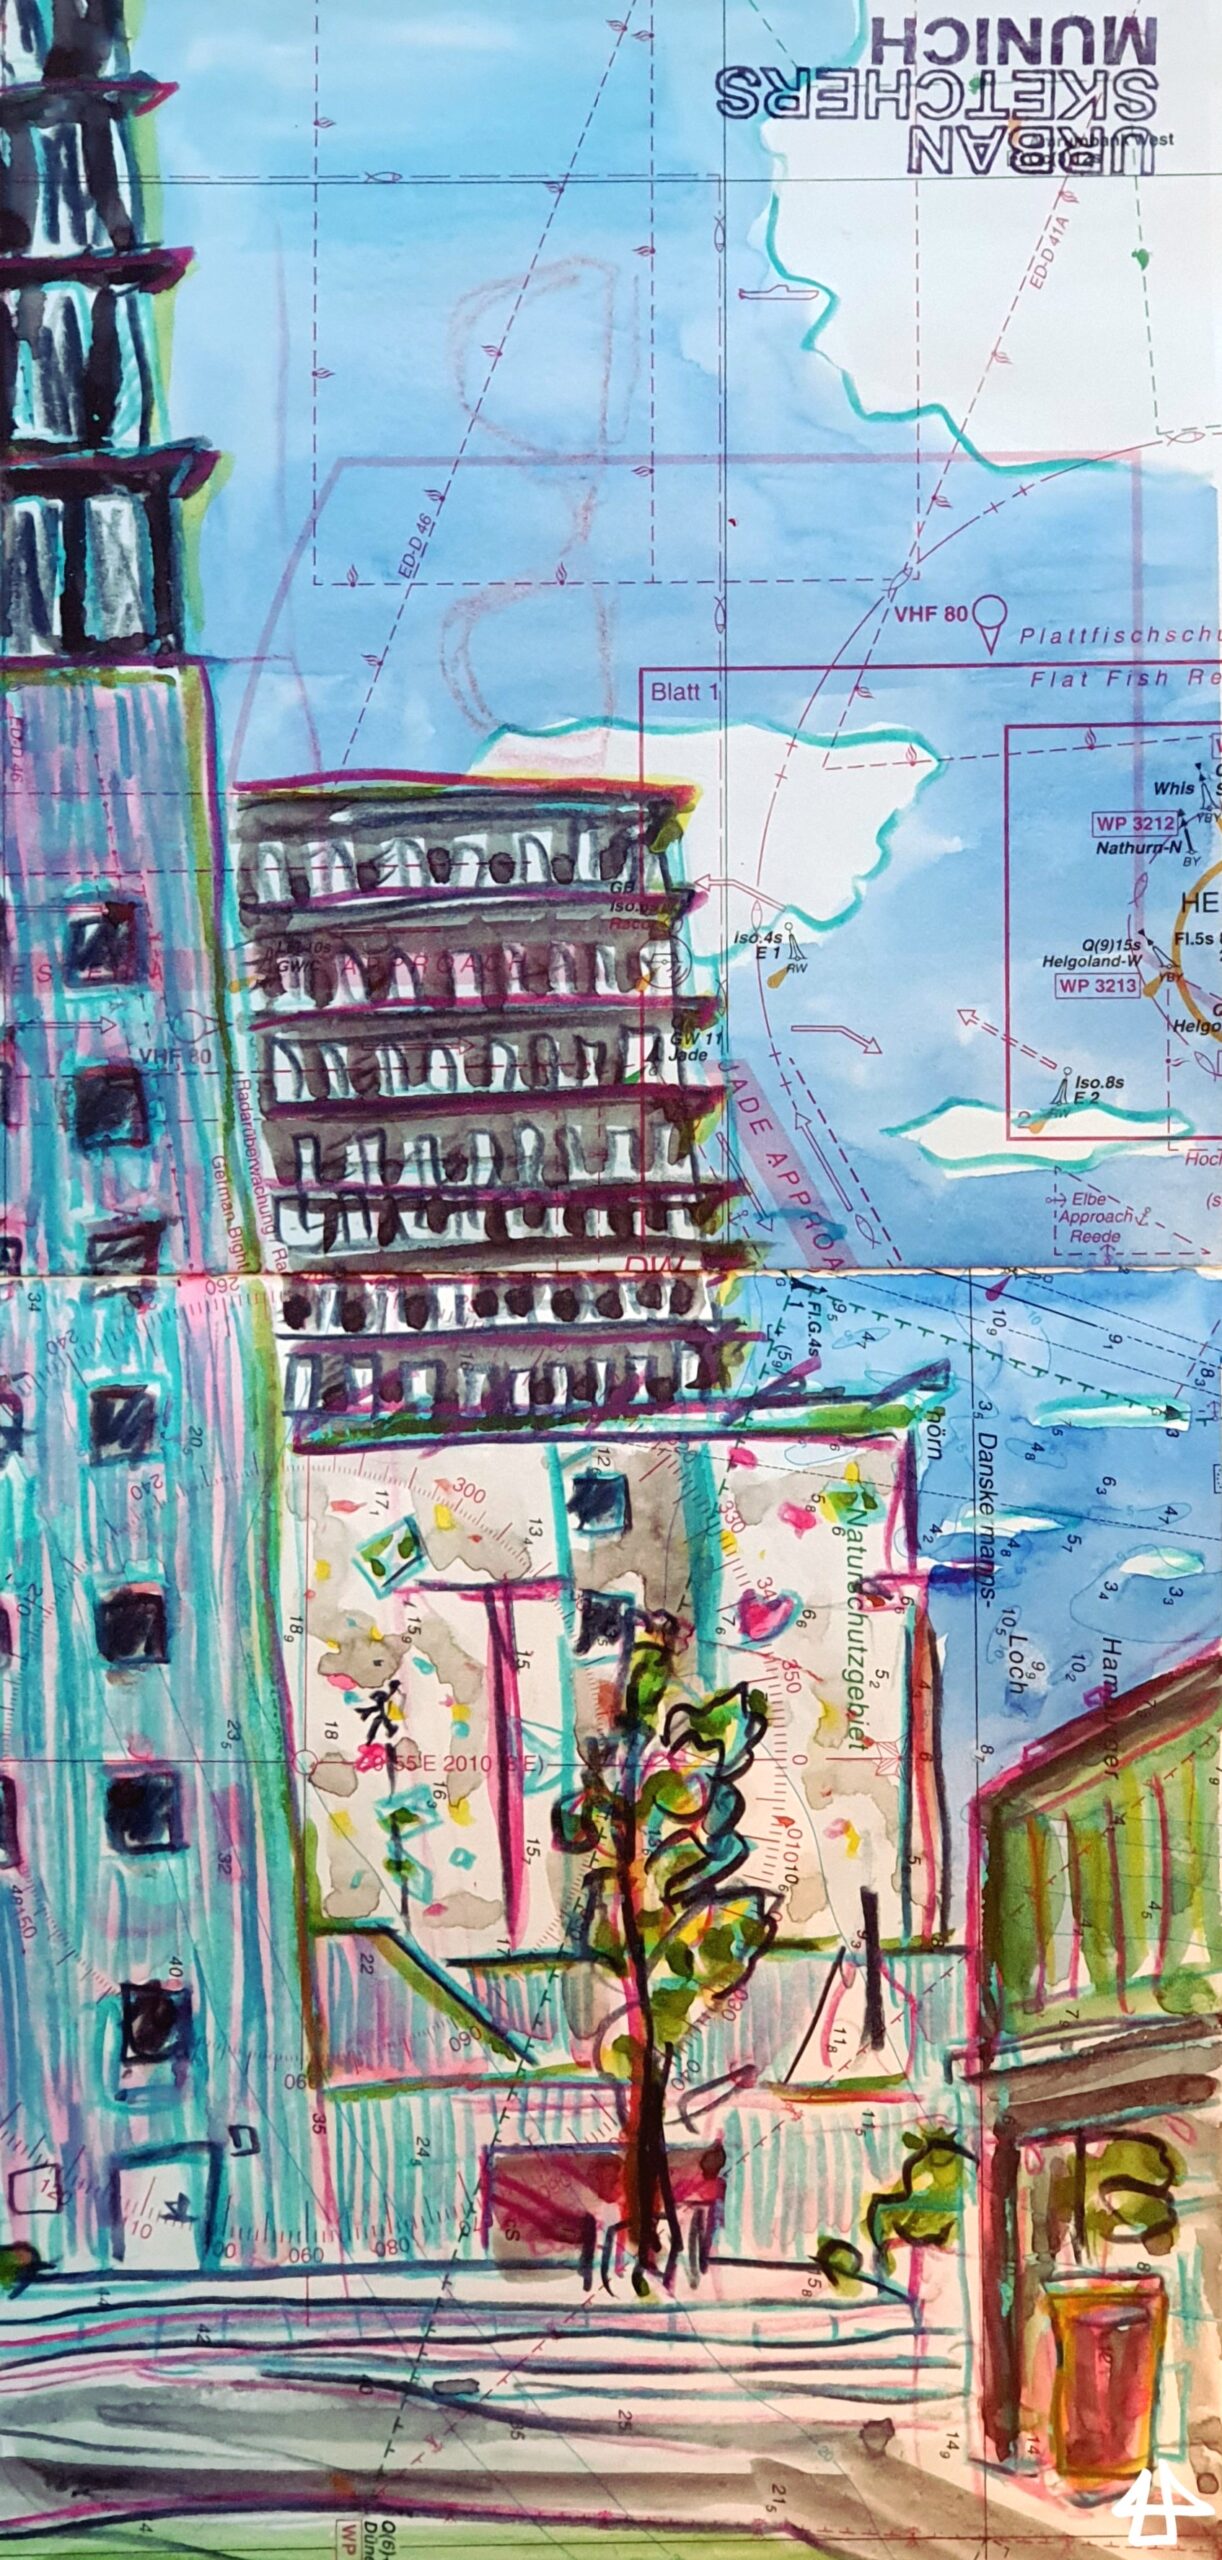 Zeichnung mit Aquarell und Buntstiften auf Seekarte: Mehrere moderne Bürogebäude hintereinander, mittig eine Kletterwand, davor ein junger Baum. Im Hintergrund weiße Wolken am blauen Himmel.